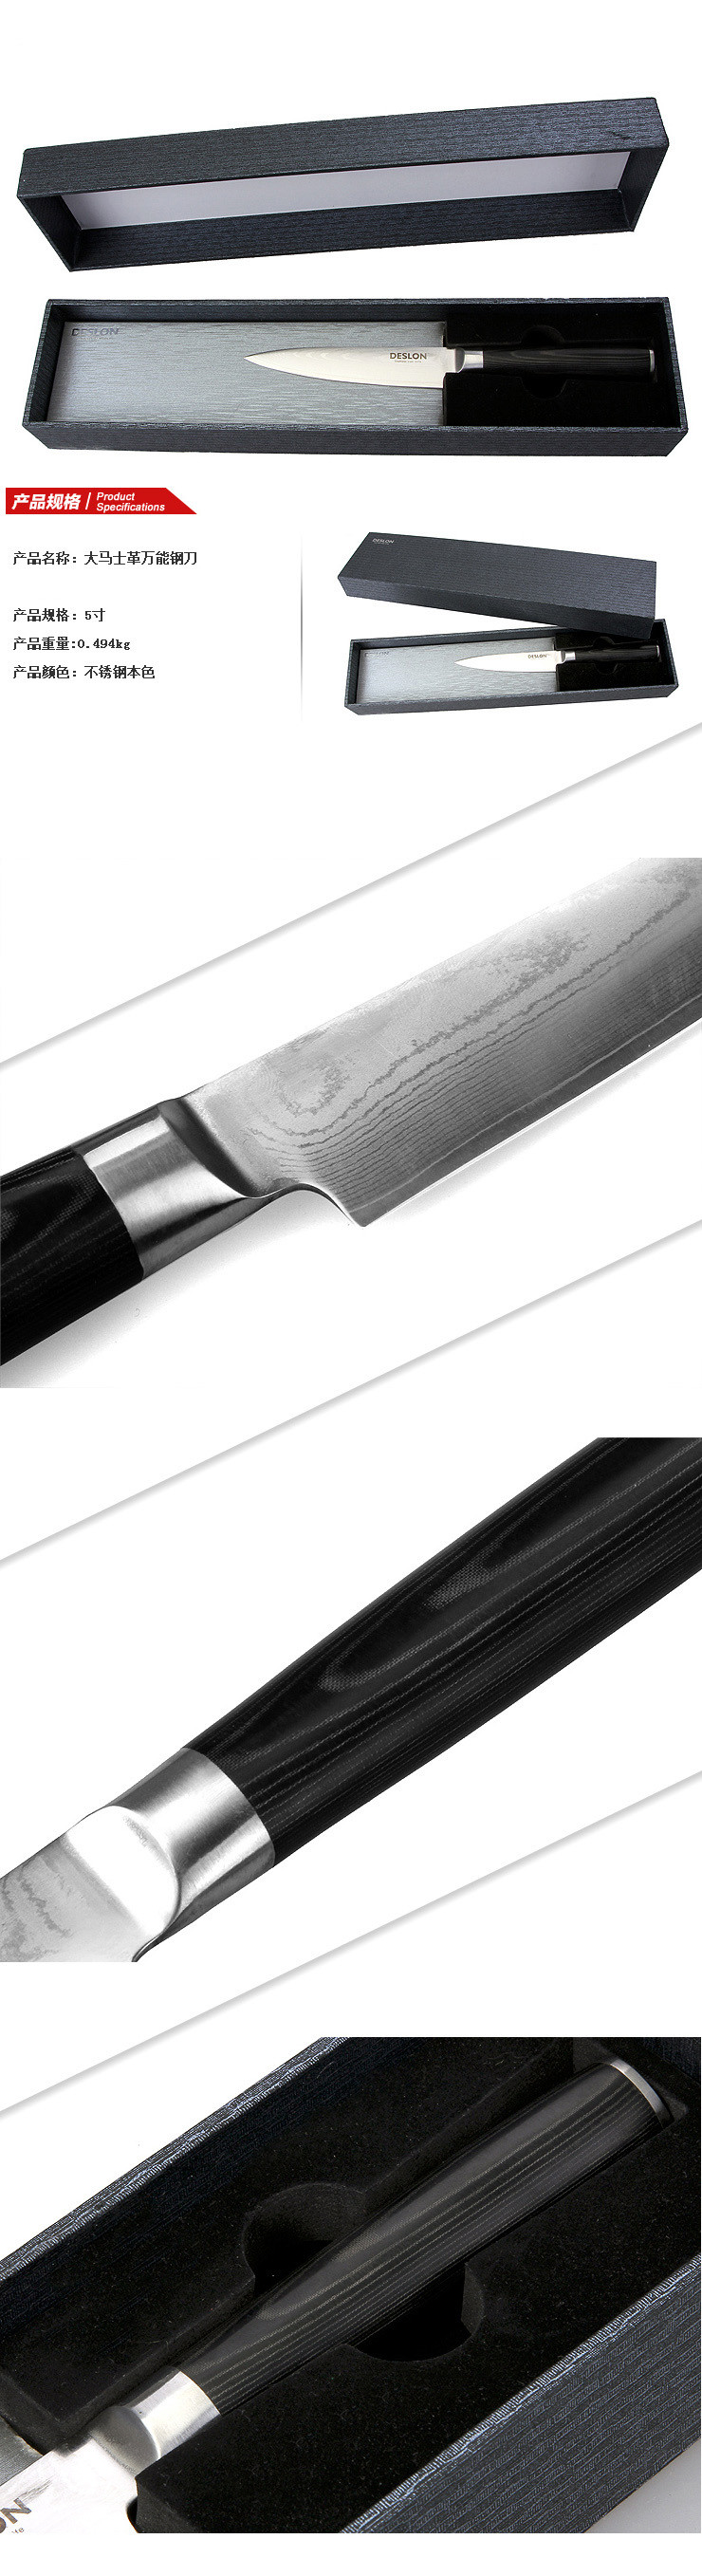 徳世朗德国进口大马士万能钢刀厨房创意菜刀 DMS-002